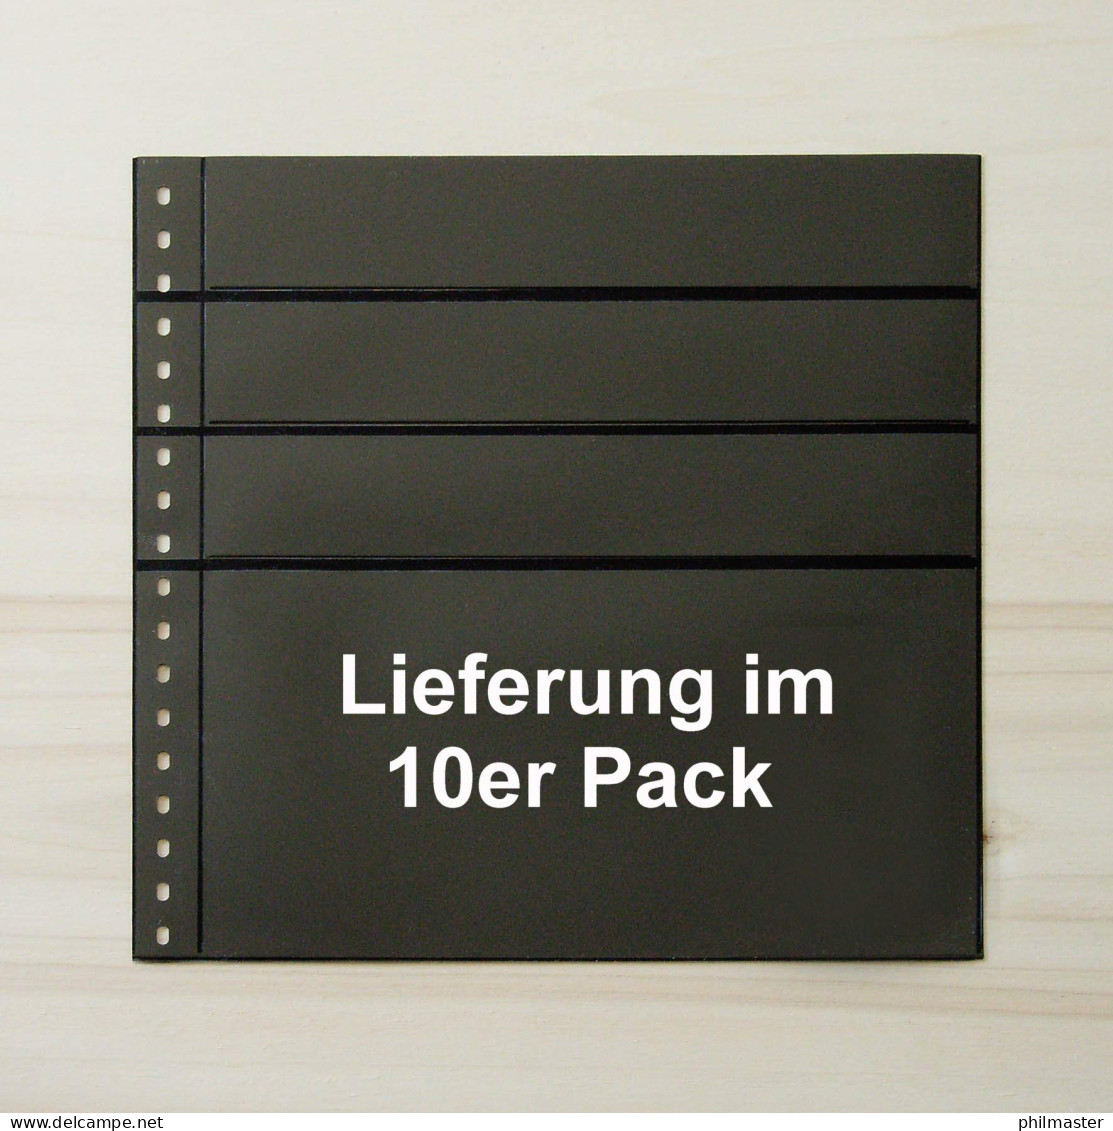 LINDNER Omnia Einsteckblatt 081 - Schwarz 3x 43 + 1x 141 Mm - 10er-Packung - Blankoblätter